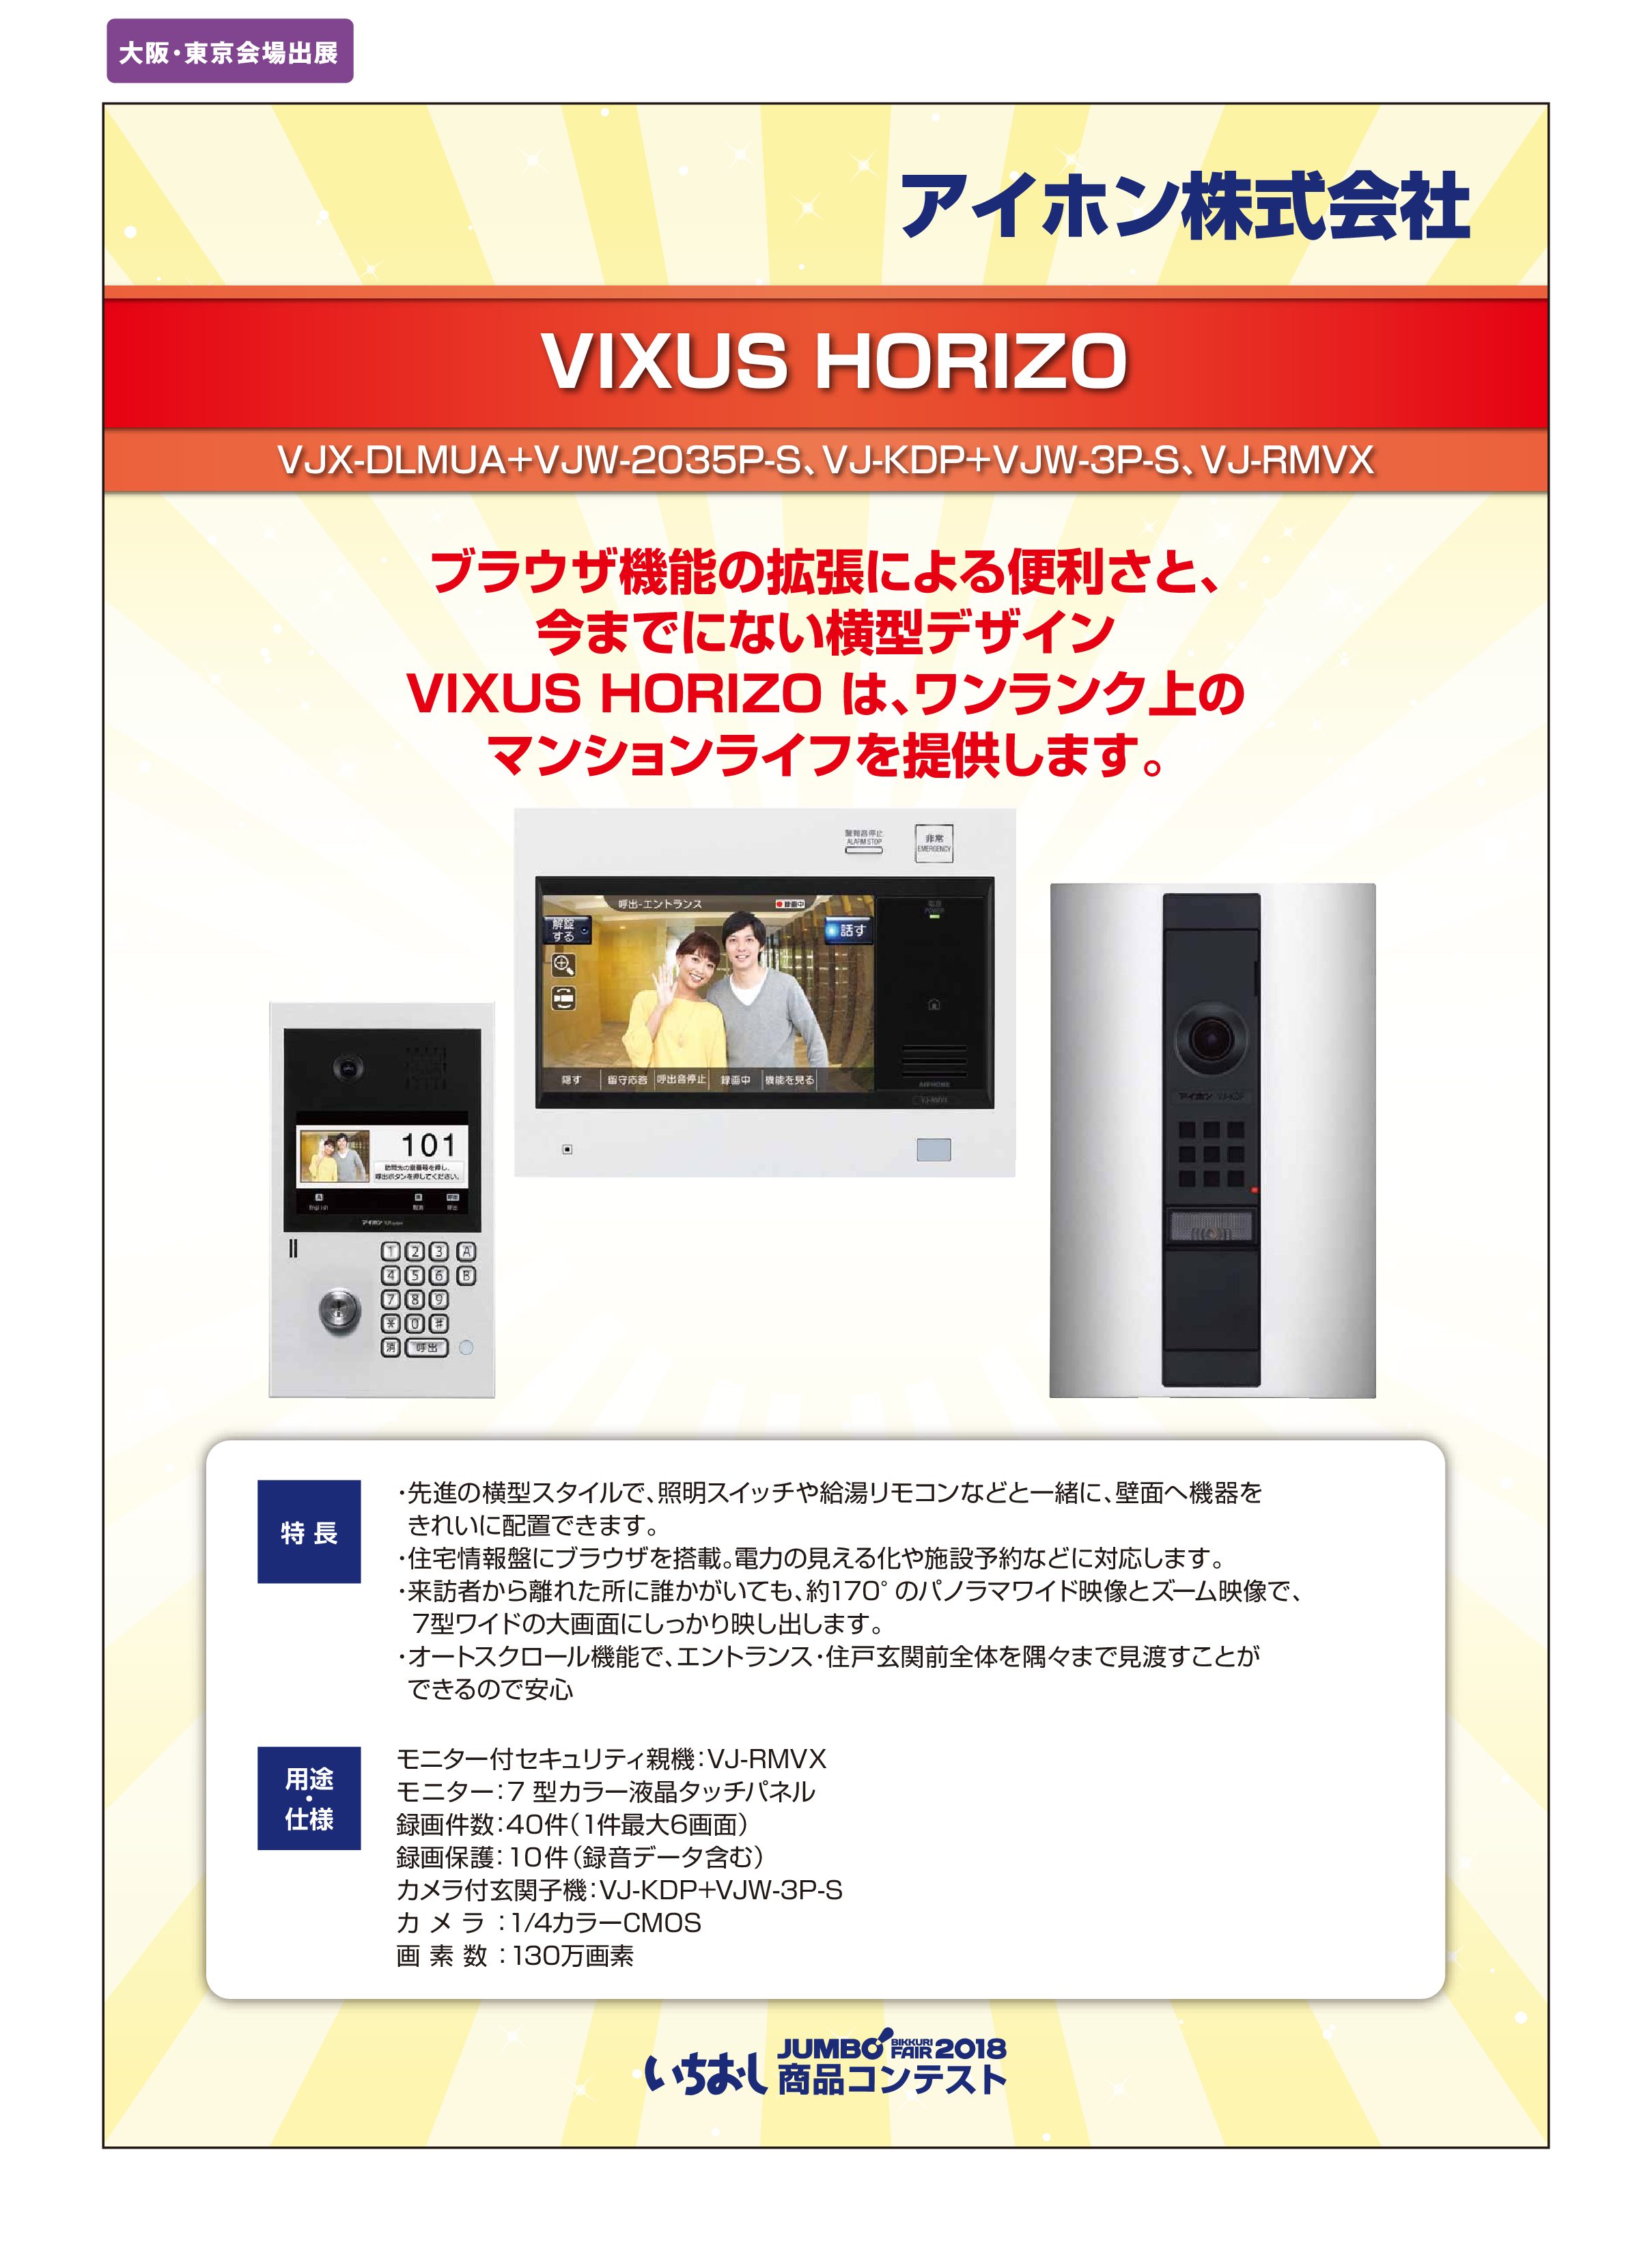 「VIXUS HORIZO」アイホン株式会社の画像